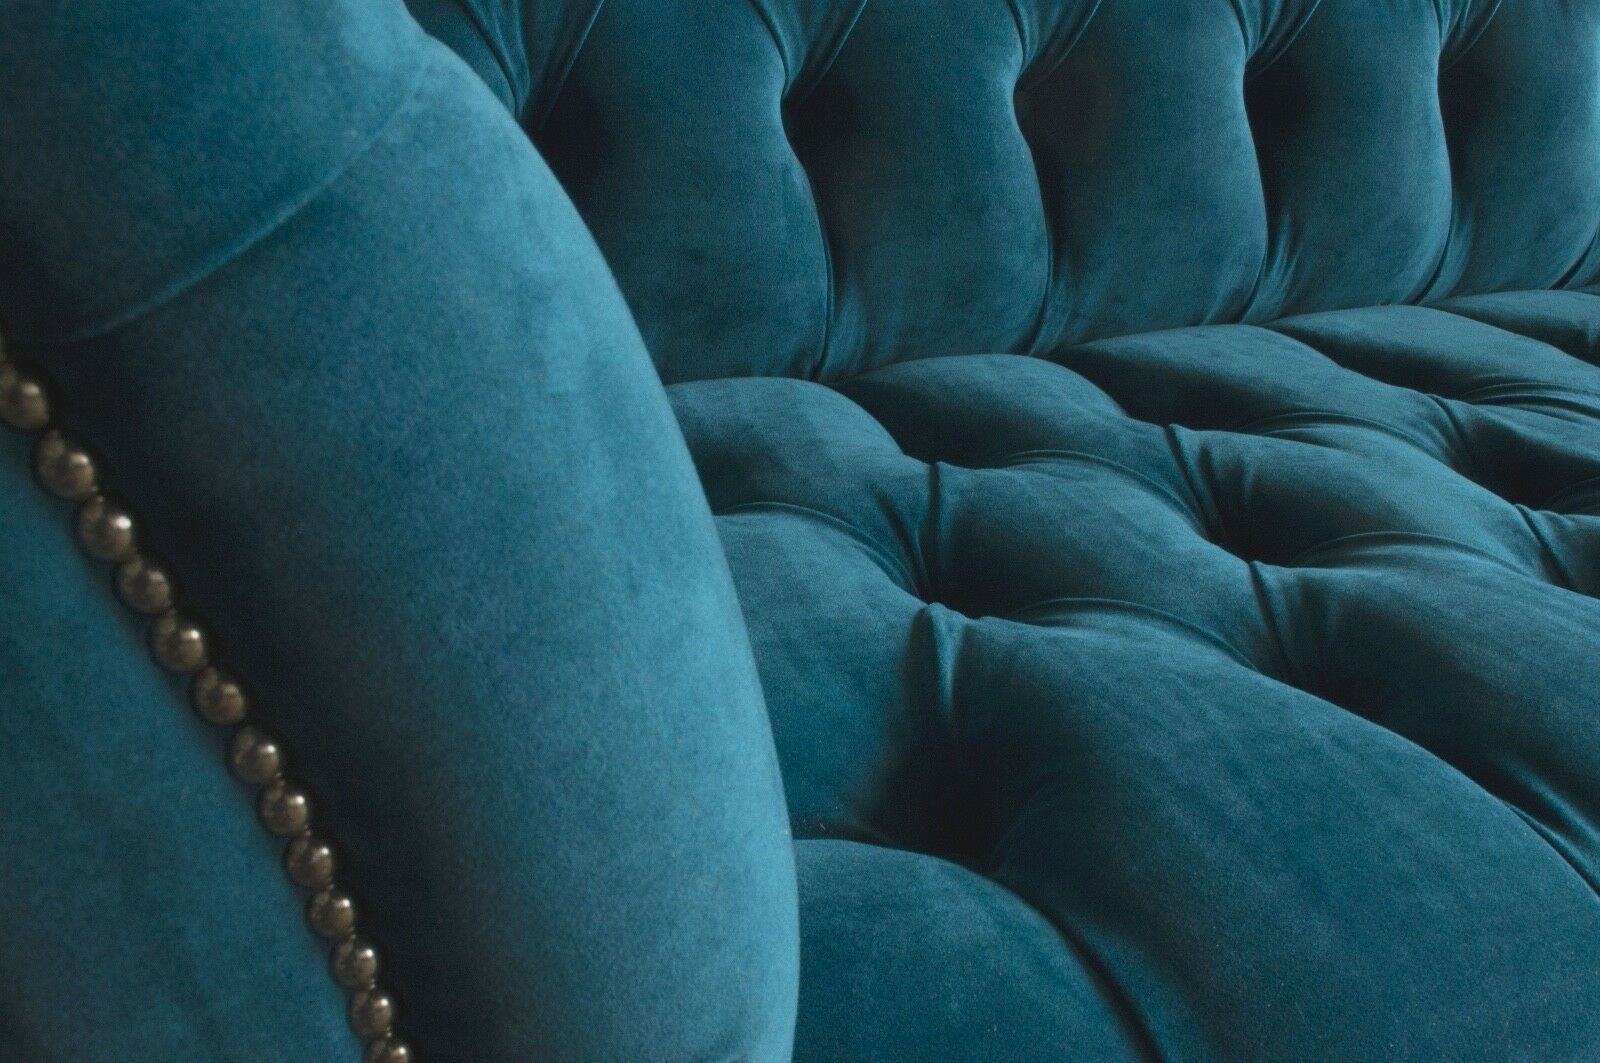 Sitzer Chesterfield-Sofa Knöpfen. mit 3 Sofa JVmoebel Sofas Rückenlehne Textil Design Polster Chesterfield Wohnzimmer, Die